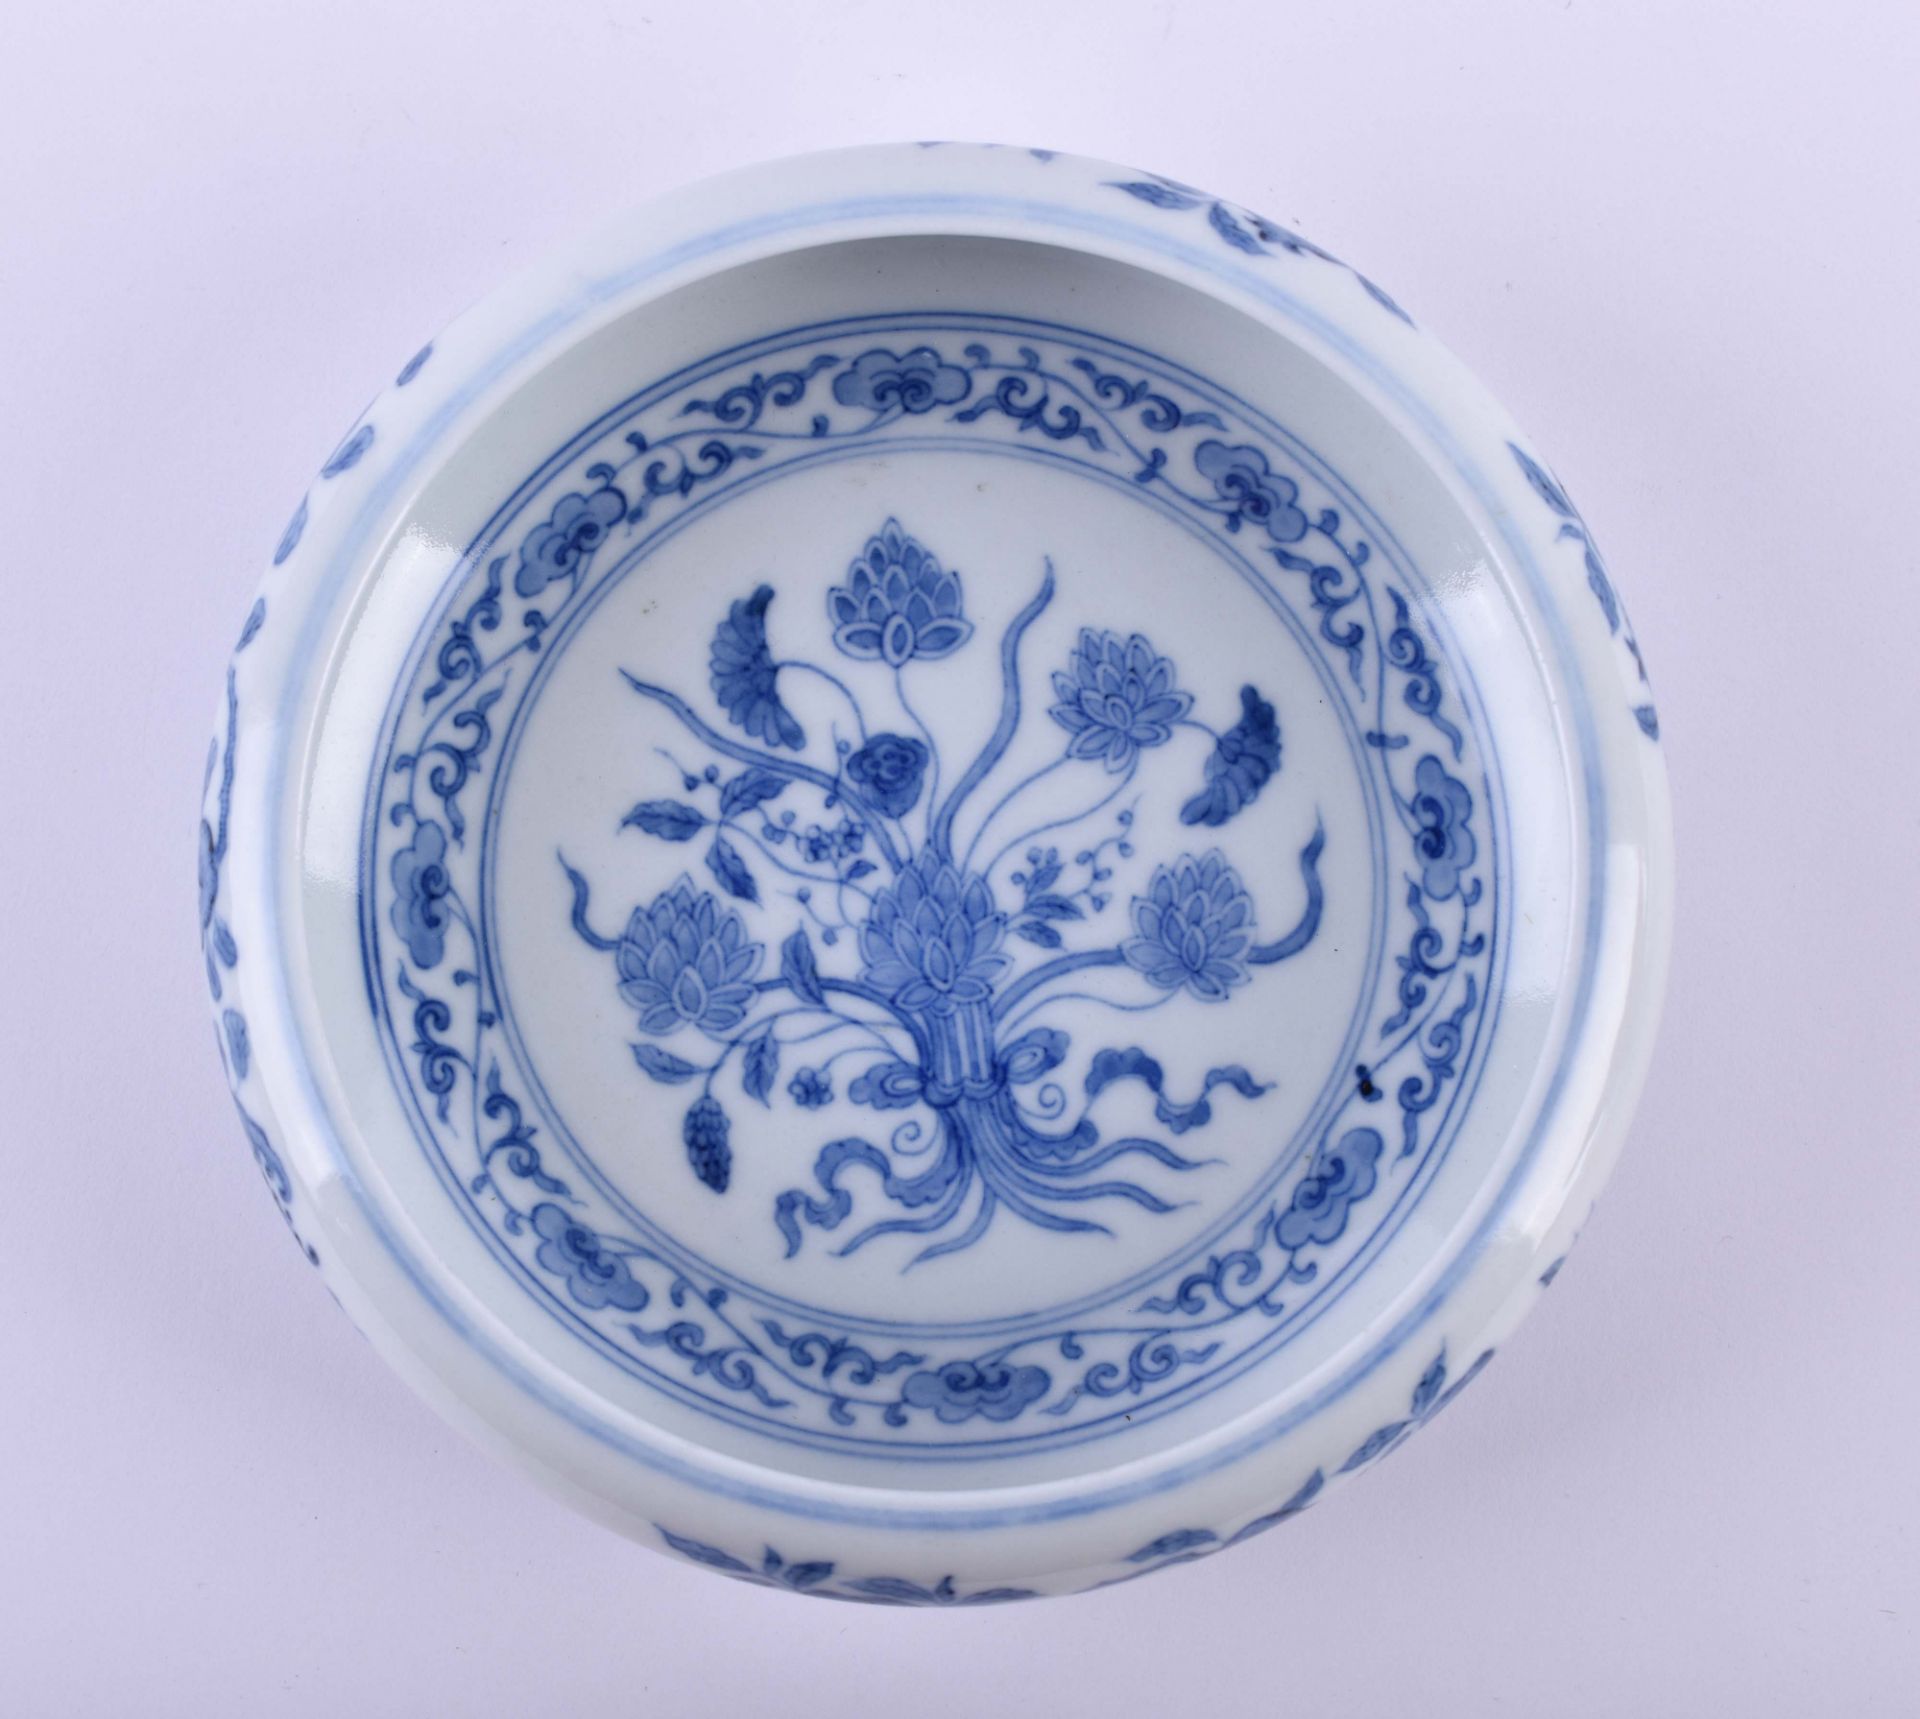  Bowl China Qing dynasty - Image 8 of 10